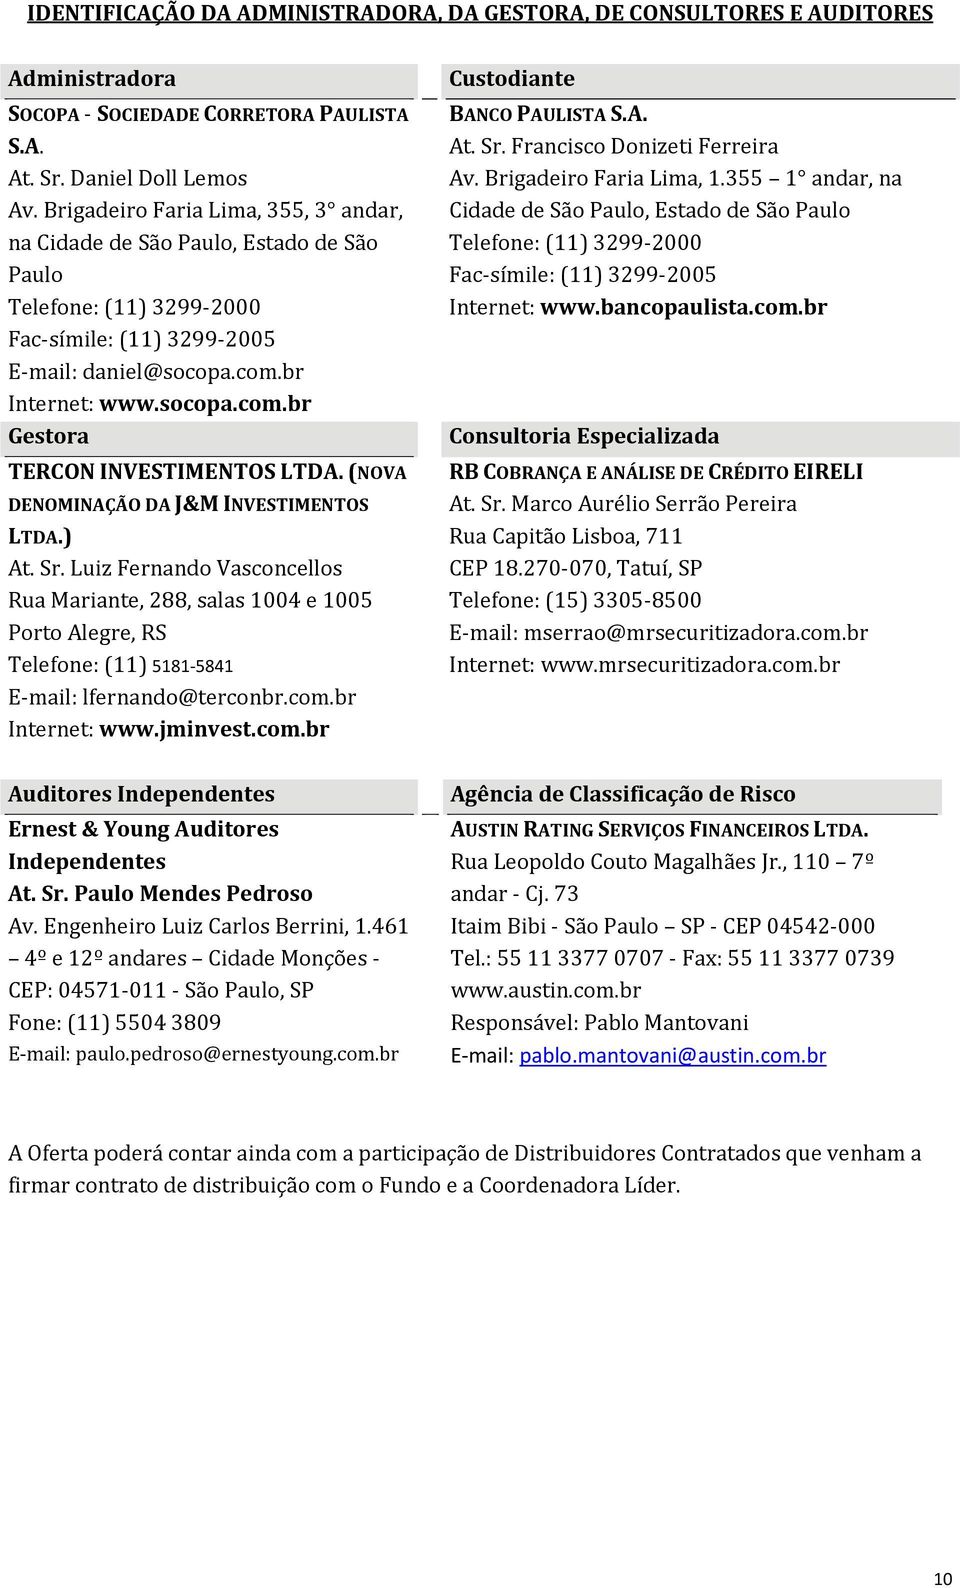 (NOVA DENOMINAÇÃO DA J&M INVESTIMENTOS LTDA.) At. Sr. Luiz Fernando Vasconcellos Rua Mariante, 288, salas 1004 e 1005 Porto Alegre, RS Telefone: (11) 5181 5841 E mail: lfernando@terconbr.com.